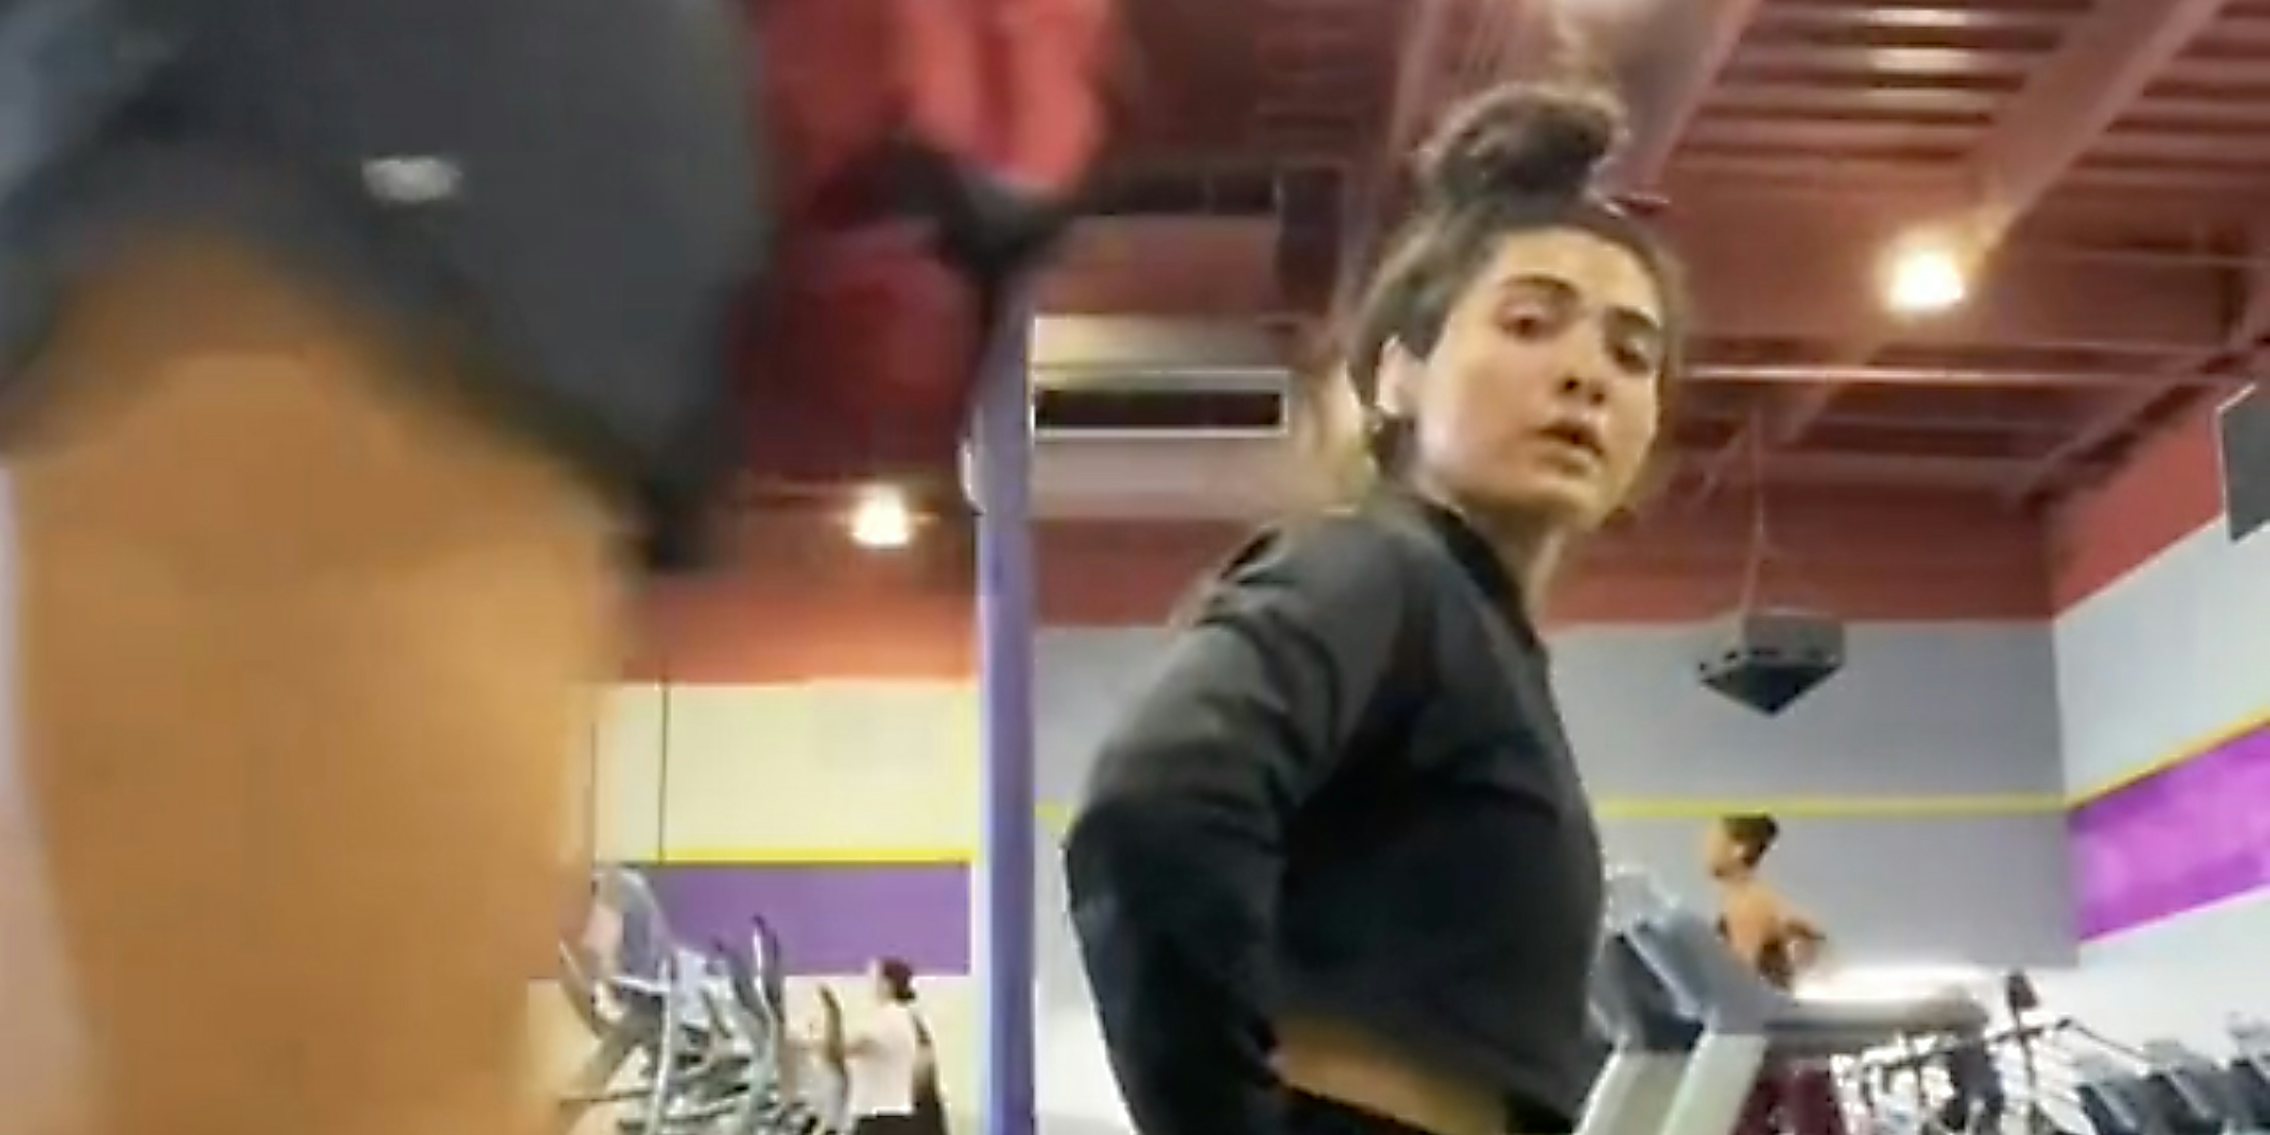 VIDEO: Kourtney Kardashian Works Off Her Anxiety at the Gym: Photo 3843648, Kourtney Kardashian Photos